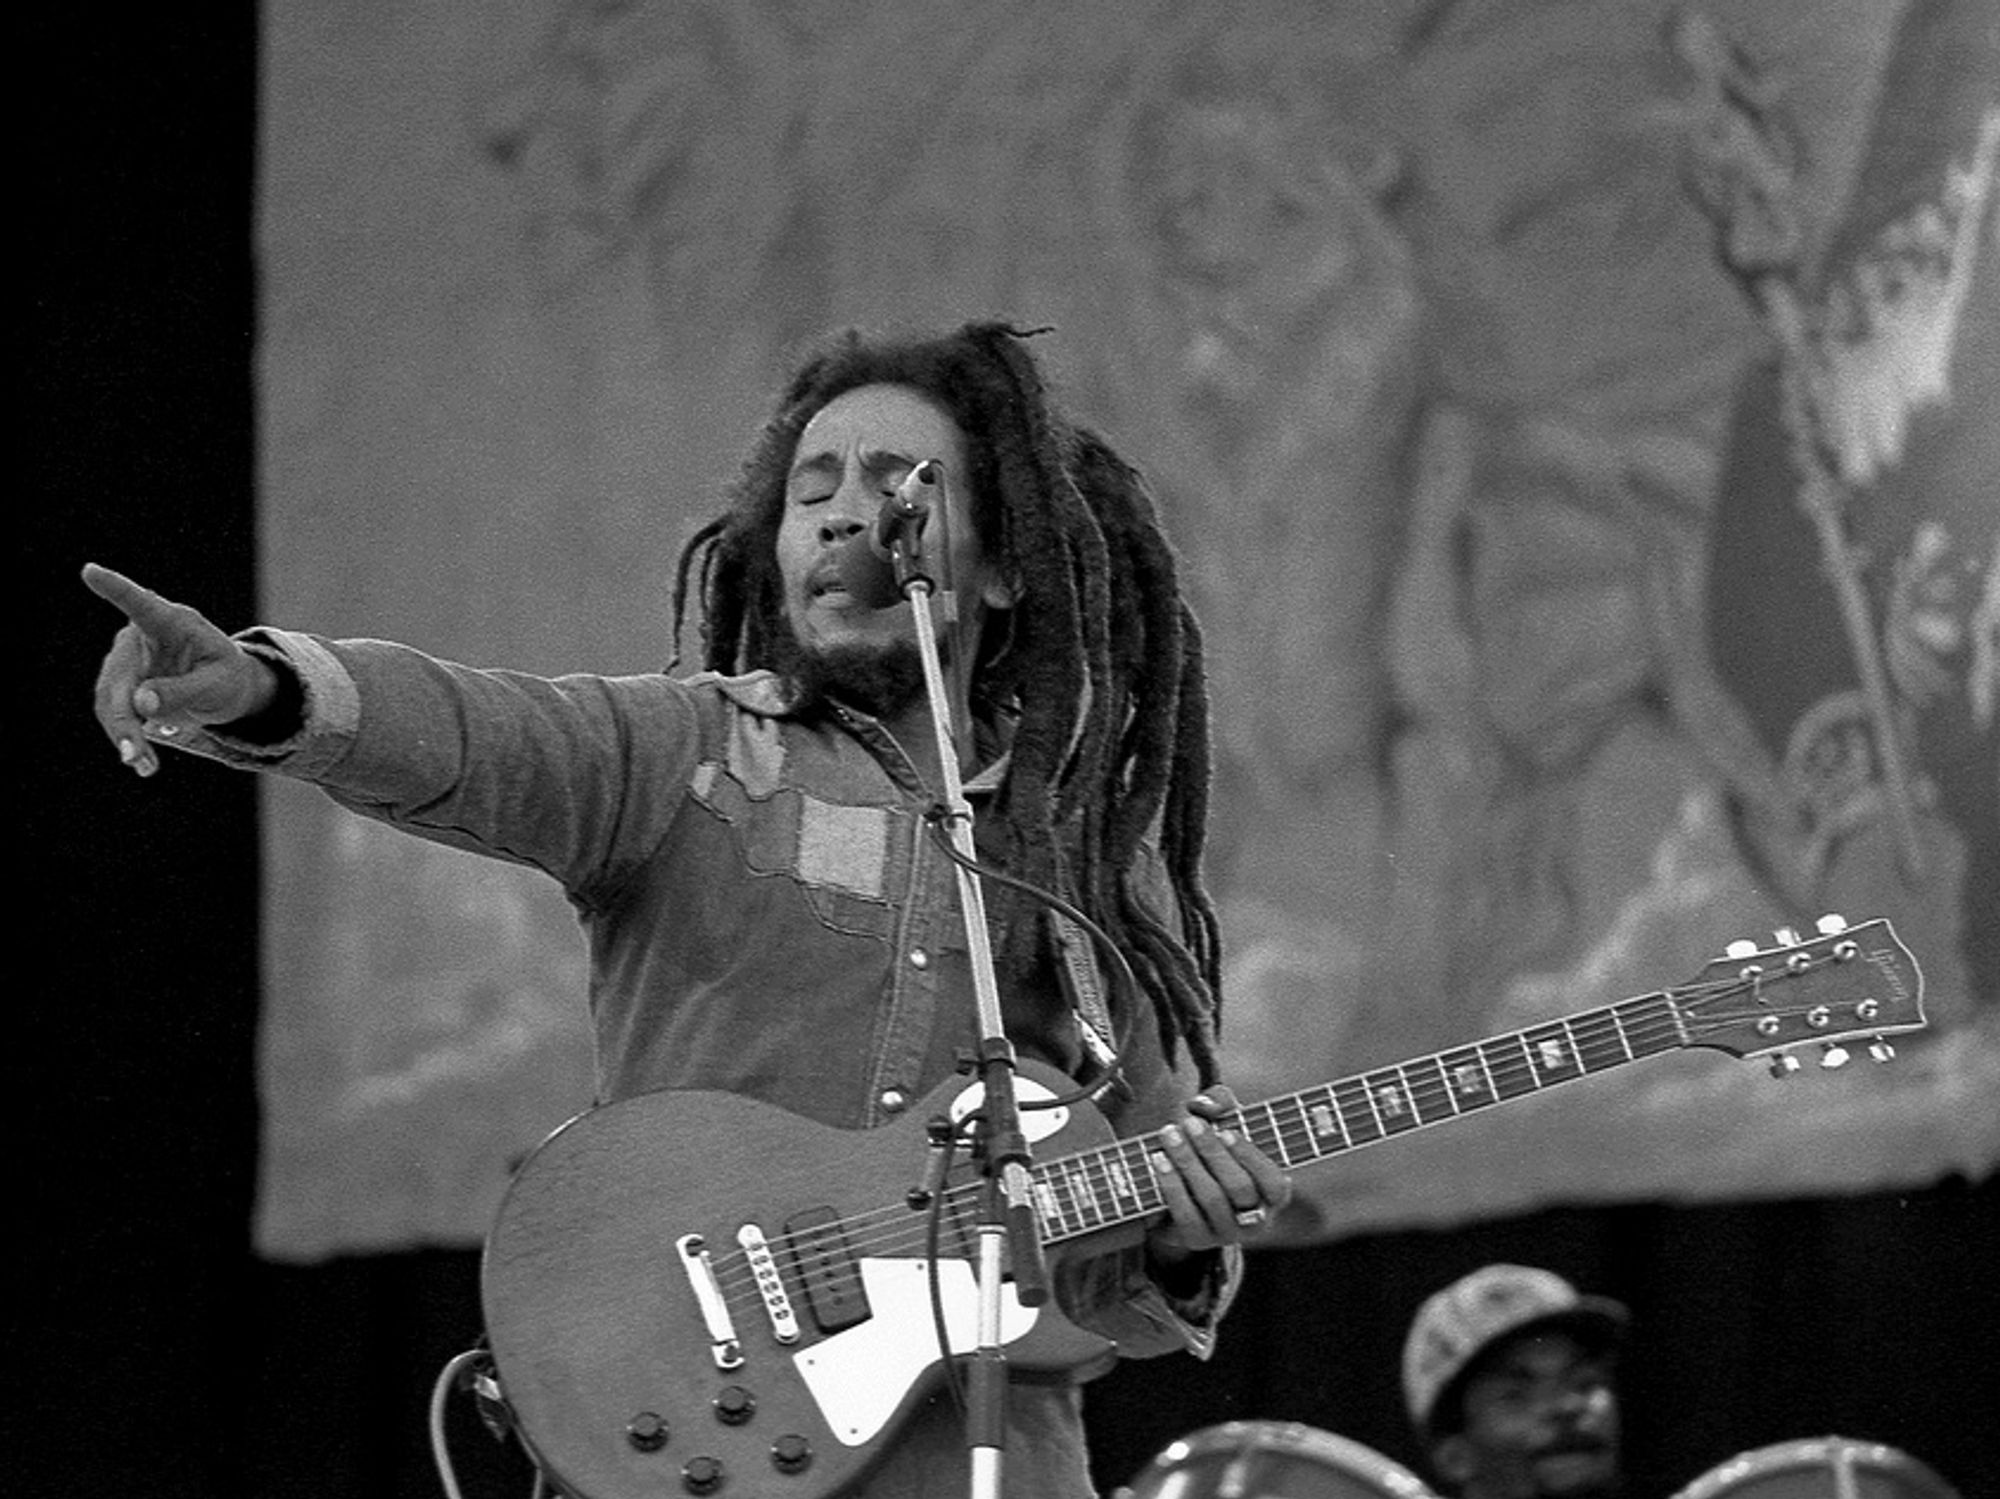 Bob Marley on stage